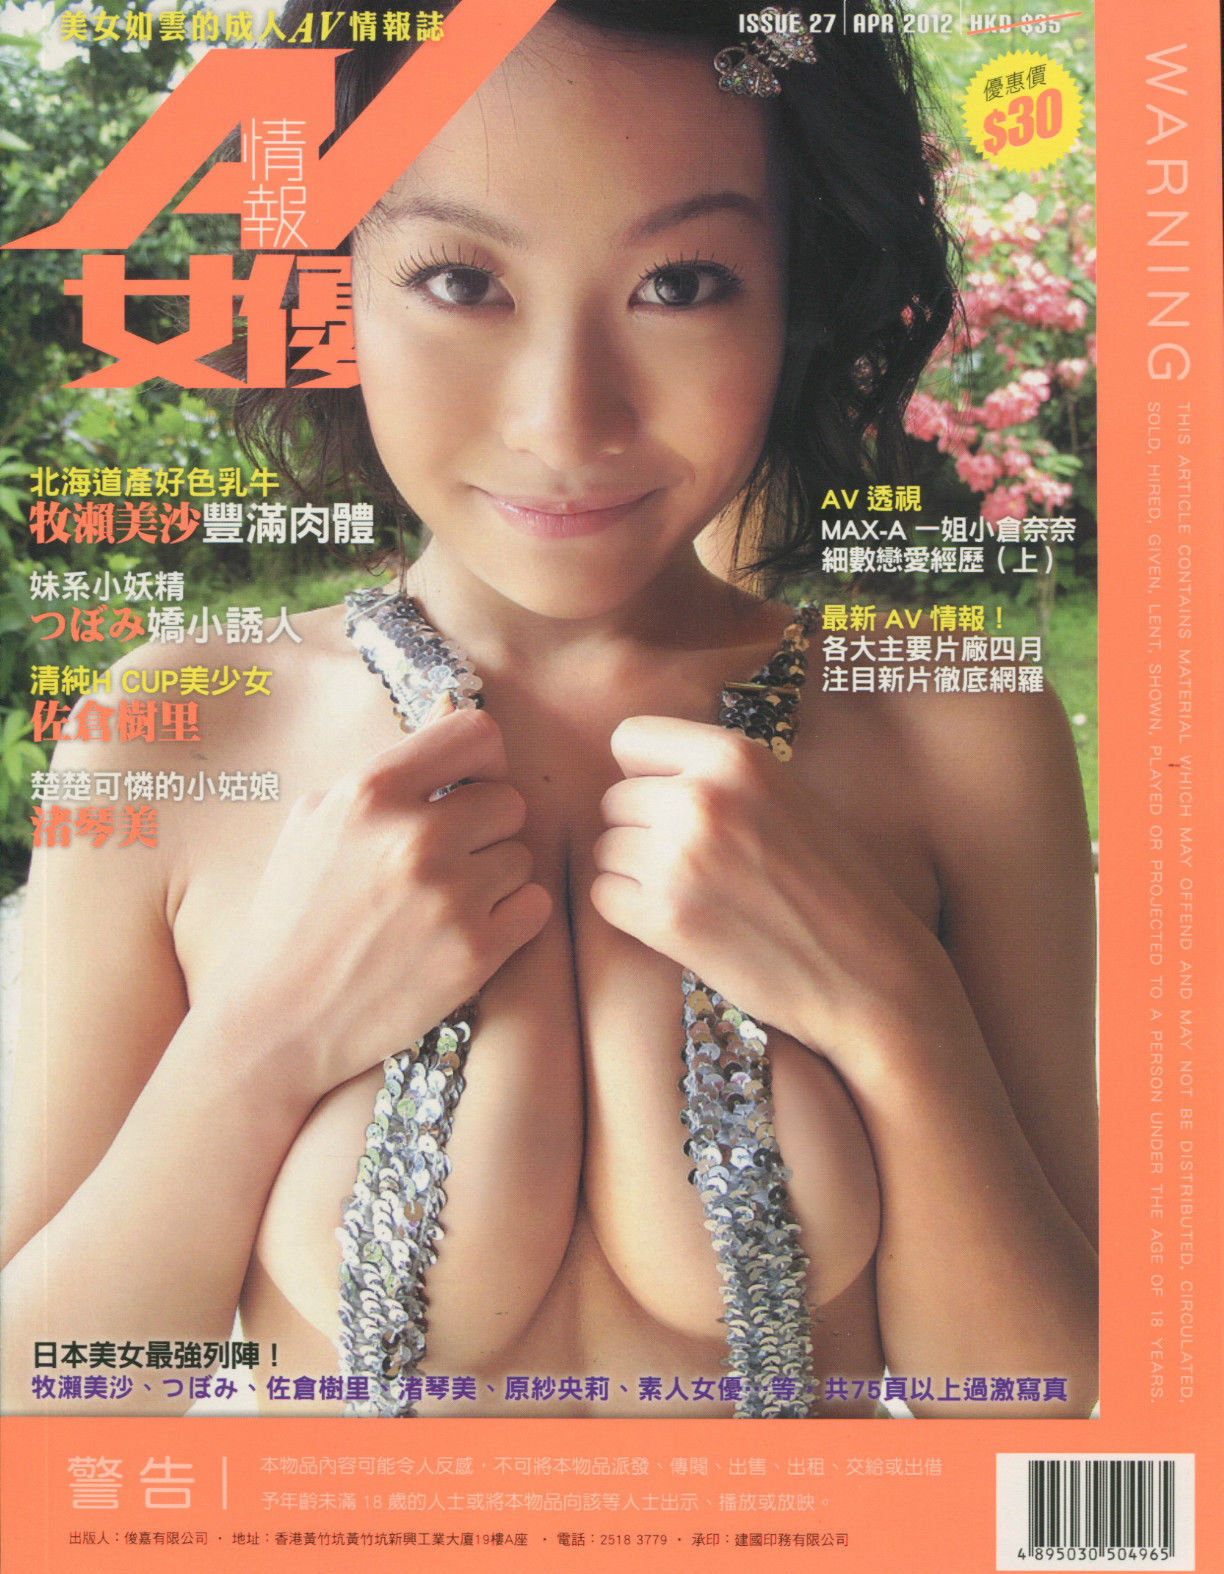 AV Girl Express # 27 magazine back issue AV Girl Express magizine back copy 